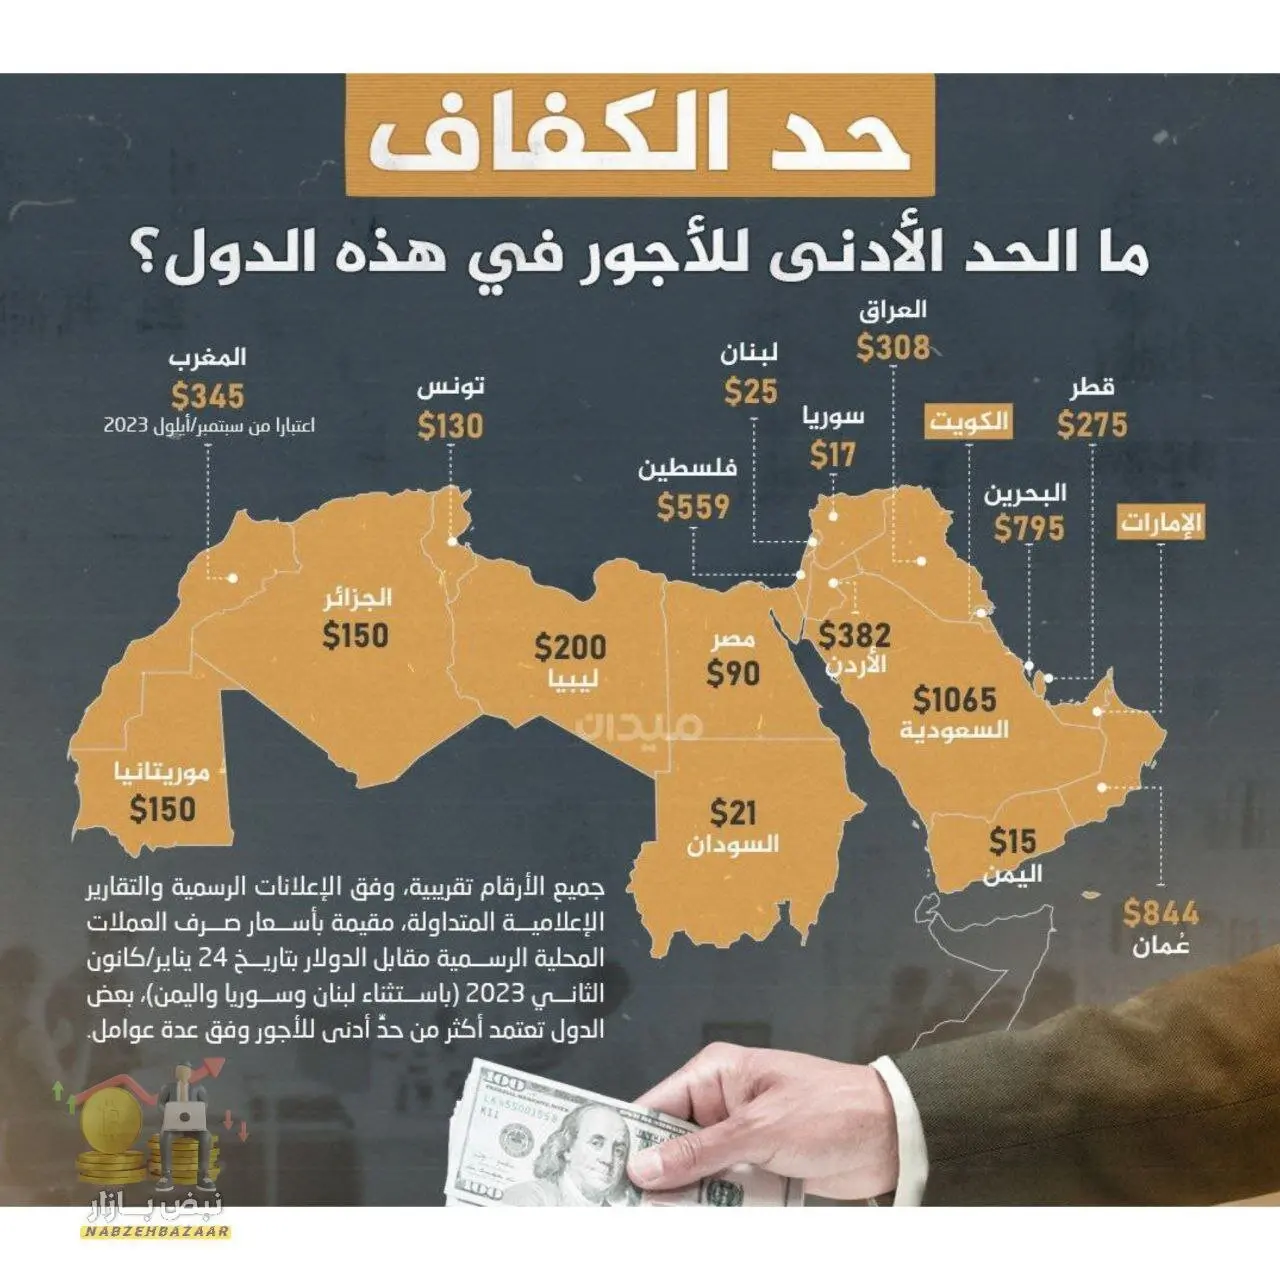 حداقل دستمزد در هریک از کشورهای جهان عرب